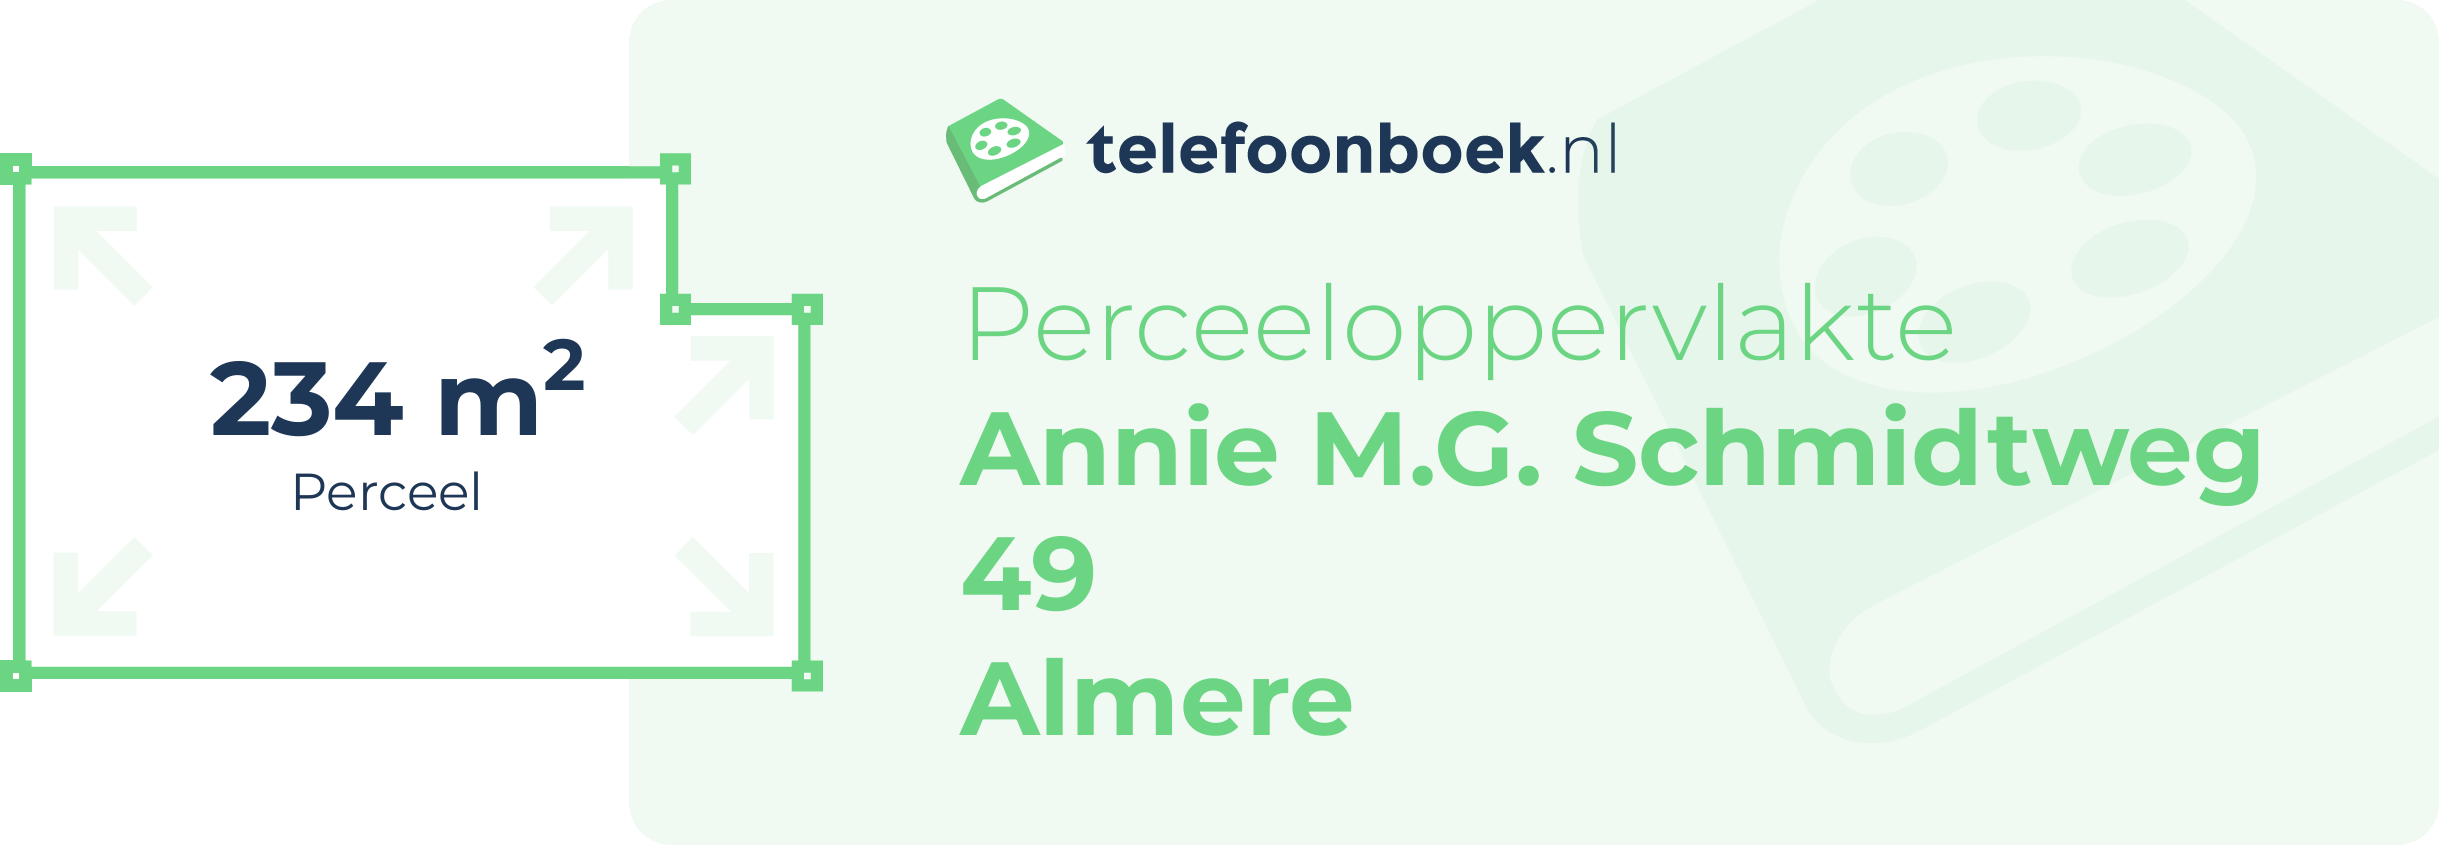 Perceeloppervlakte Annie M.G. Schmidtweg 49 Almere